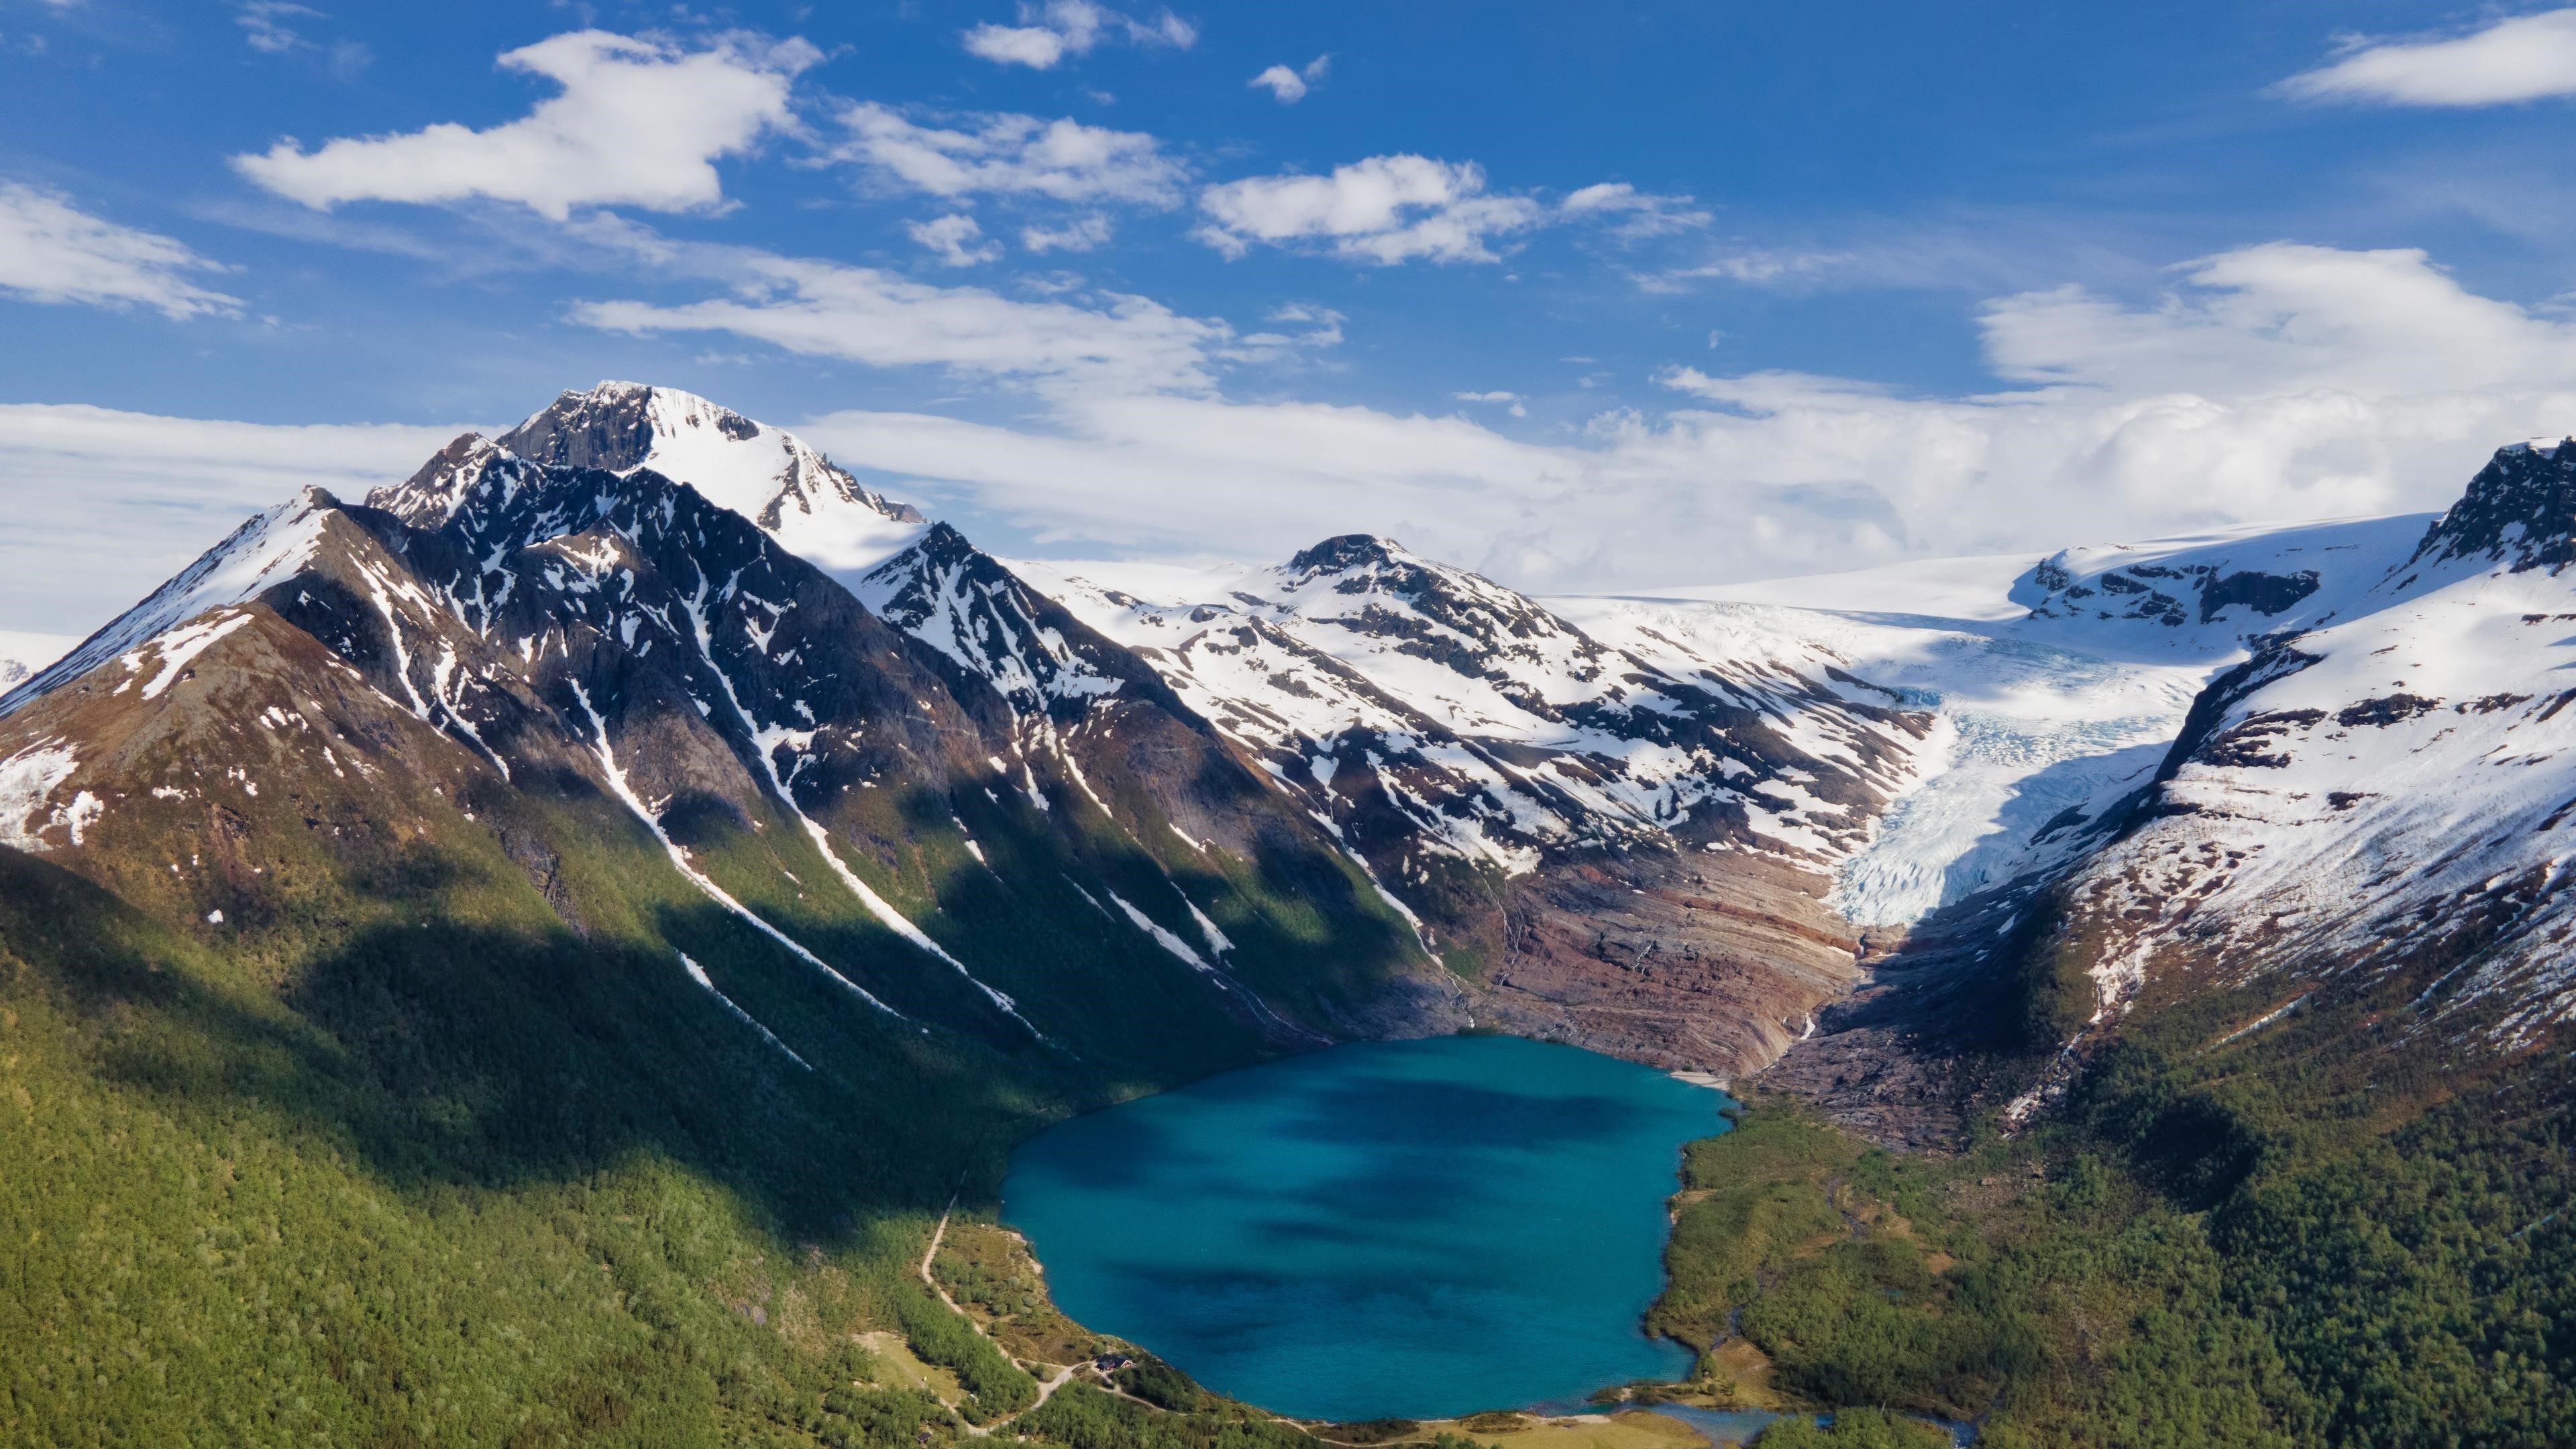 Озеро окруженное белыми покрытыми горами под облачным голубым небом в свартисватнете Норвегия природа обои скачать